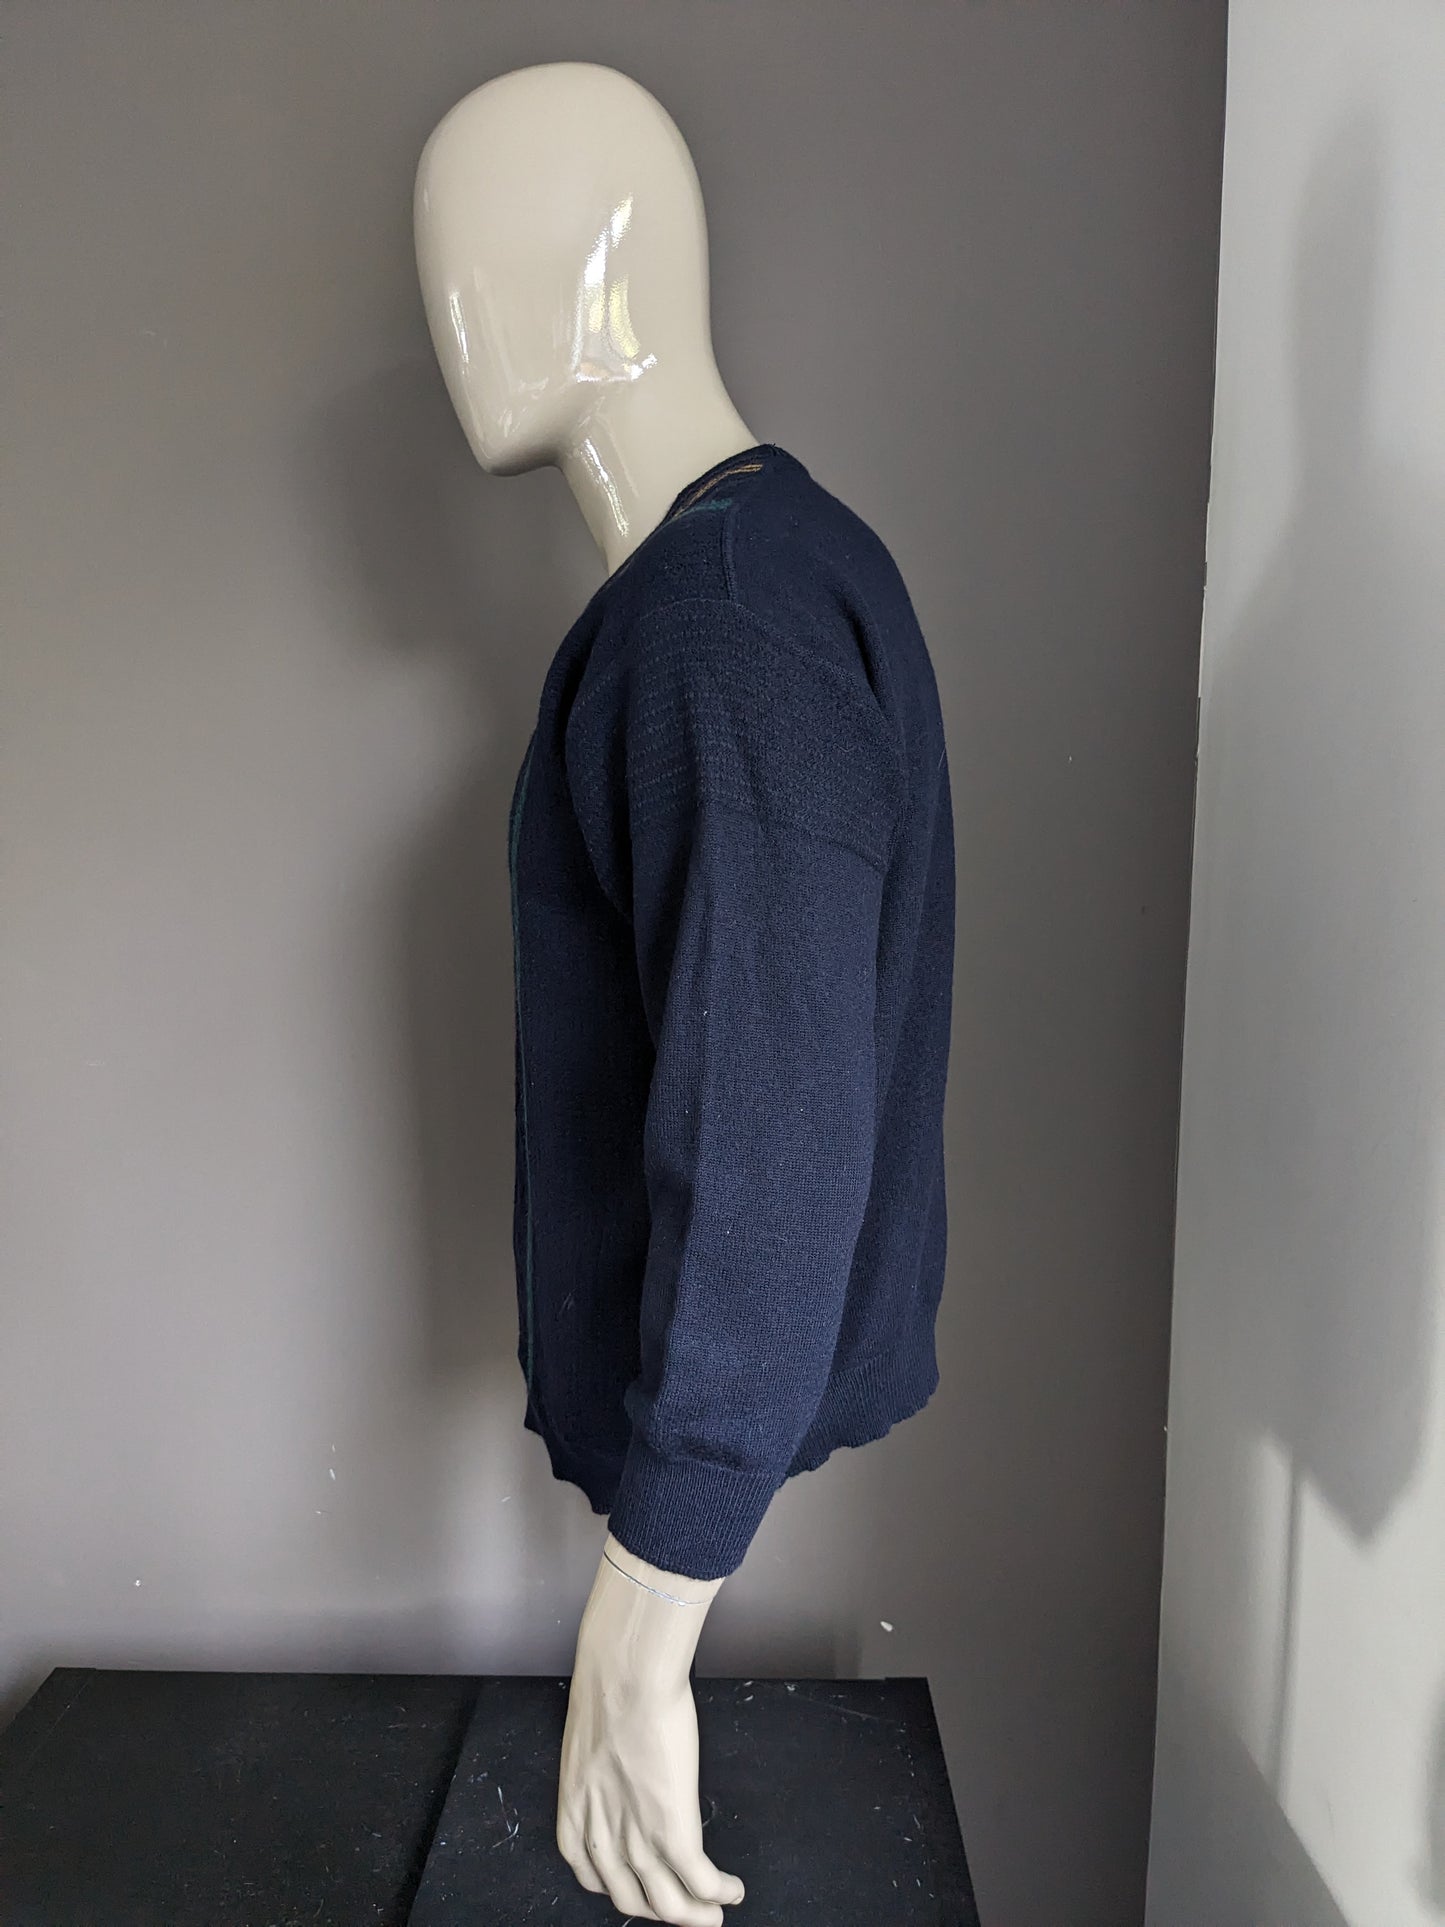 Vintage Maselli Wolle-Pullover mit V-Ausschnitt. Dunkelblau mit gelb rotgrün blauem Motiv. Größe L.